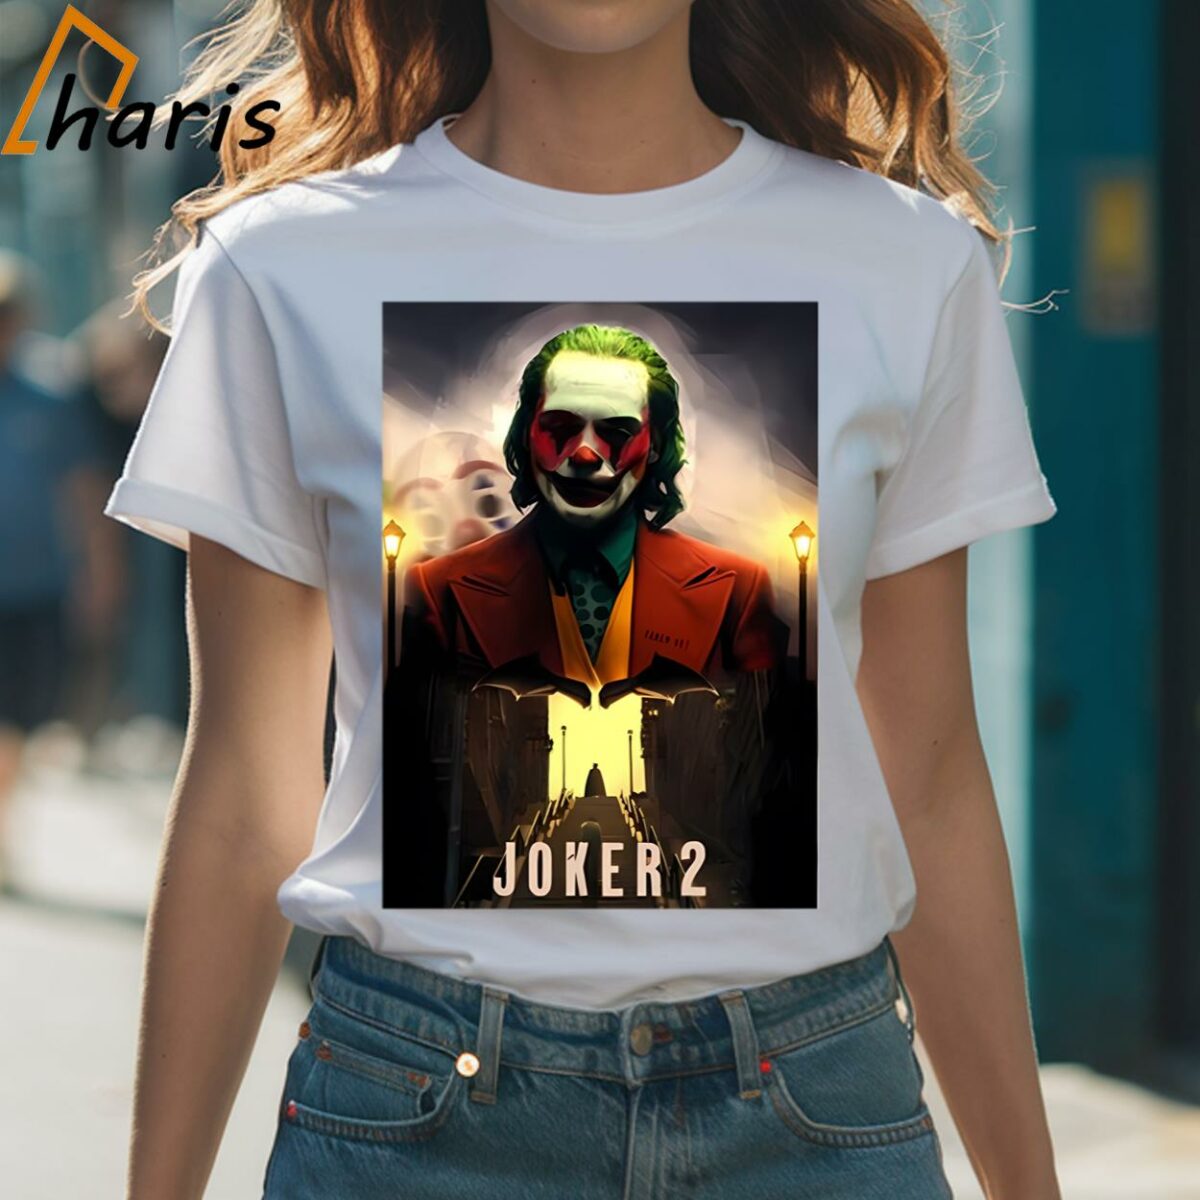 Joker 2 New Movie Poster T shirt 1 Shirt